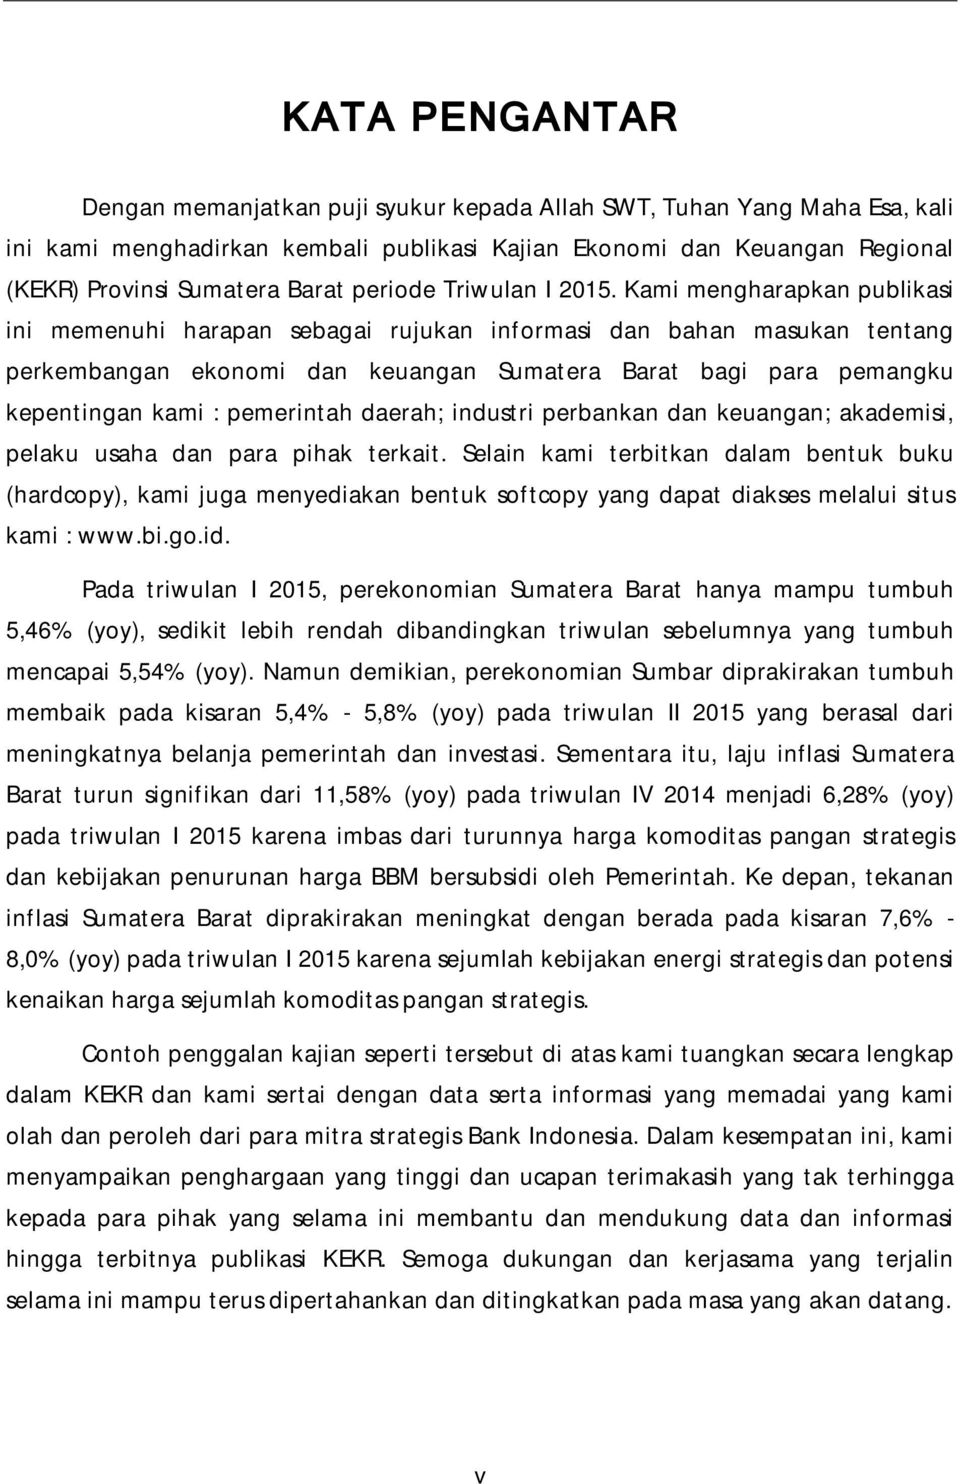 Kami mengharapkan publikasi ini memenuhi harapan sebagai rujukan informasi dan bahan masukan tentang perkembangan ekonomi dan keuangan Sumatera Barat bagi para pemangku kepentingan kami : pemerintah